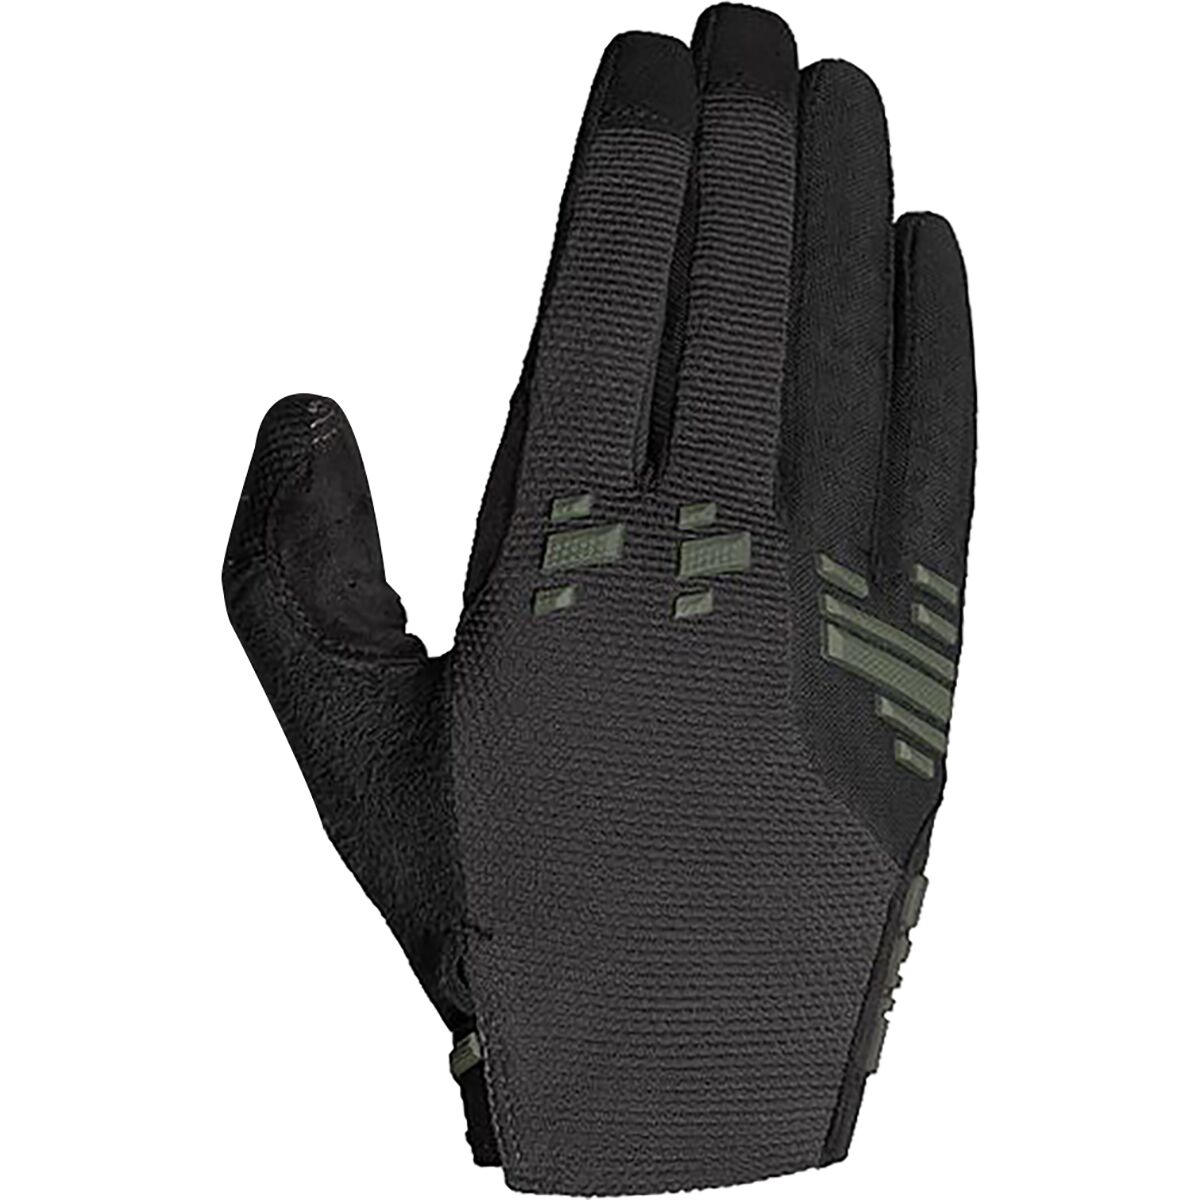 Giro Havoc Glove - Men's